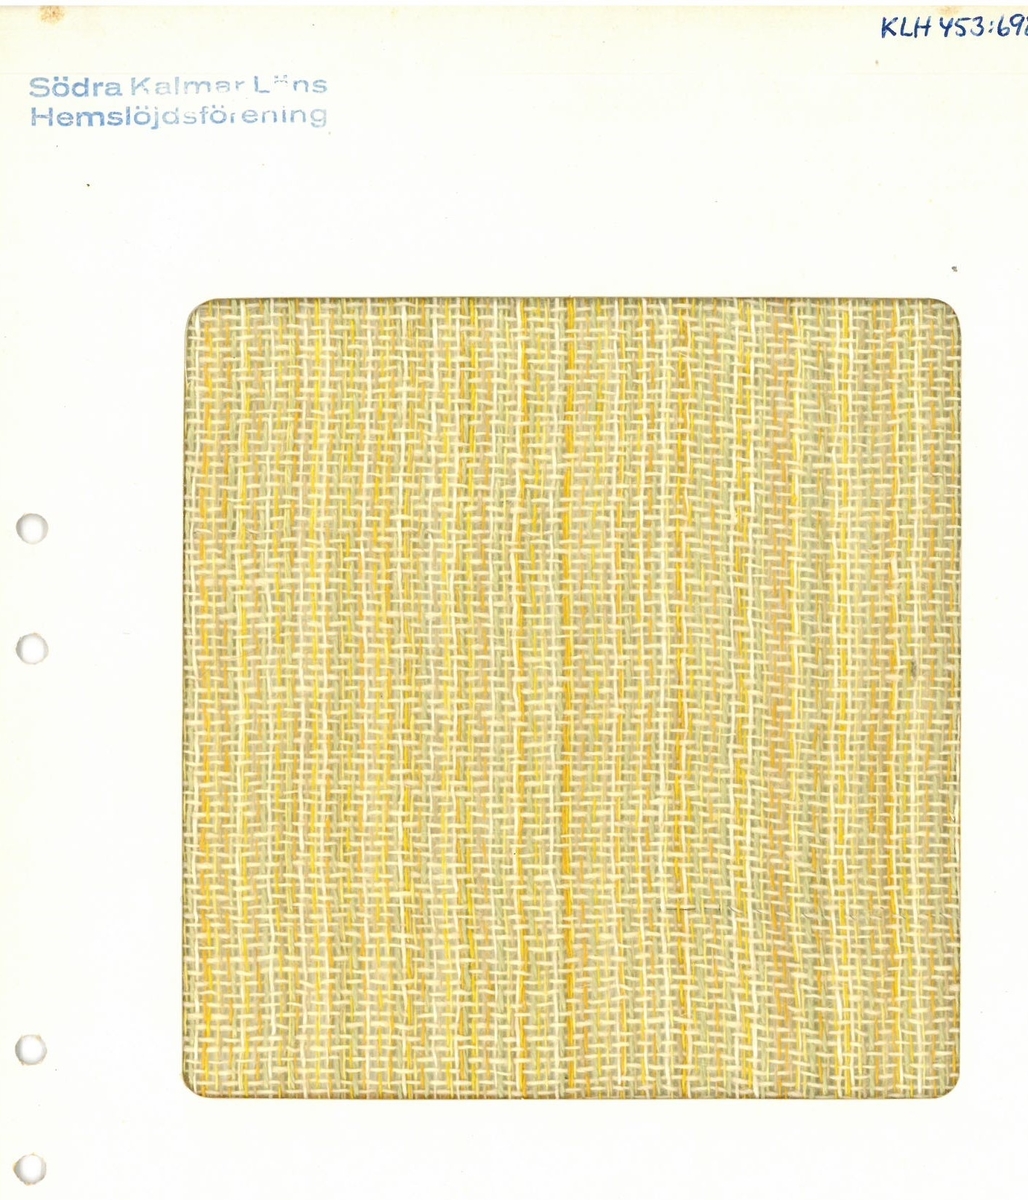 Pärm med vävprover till gardiner.
Gardin "Vendela" gul
Formgivare:
Kerstin Butler 1961-1969